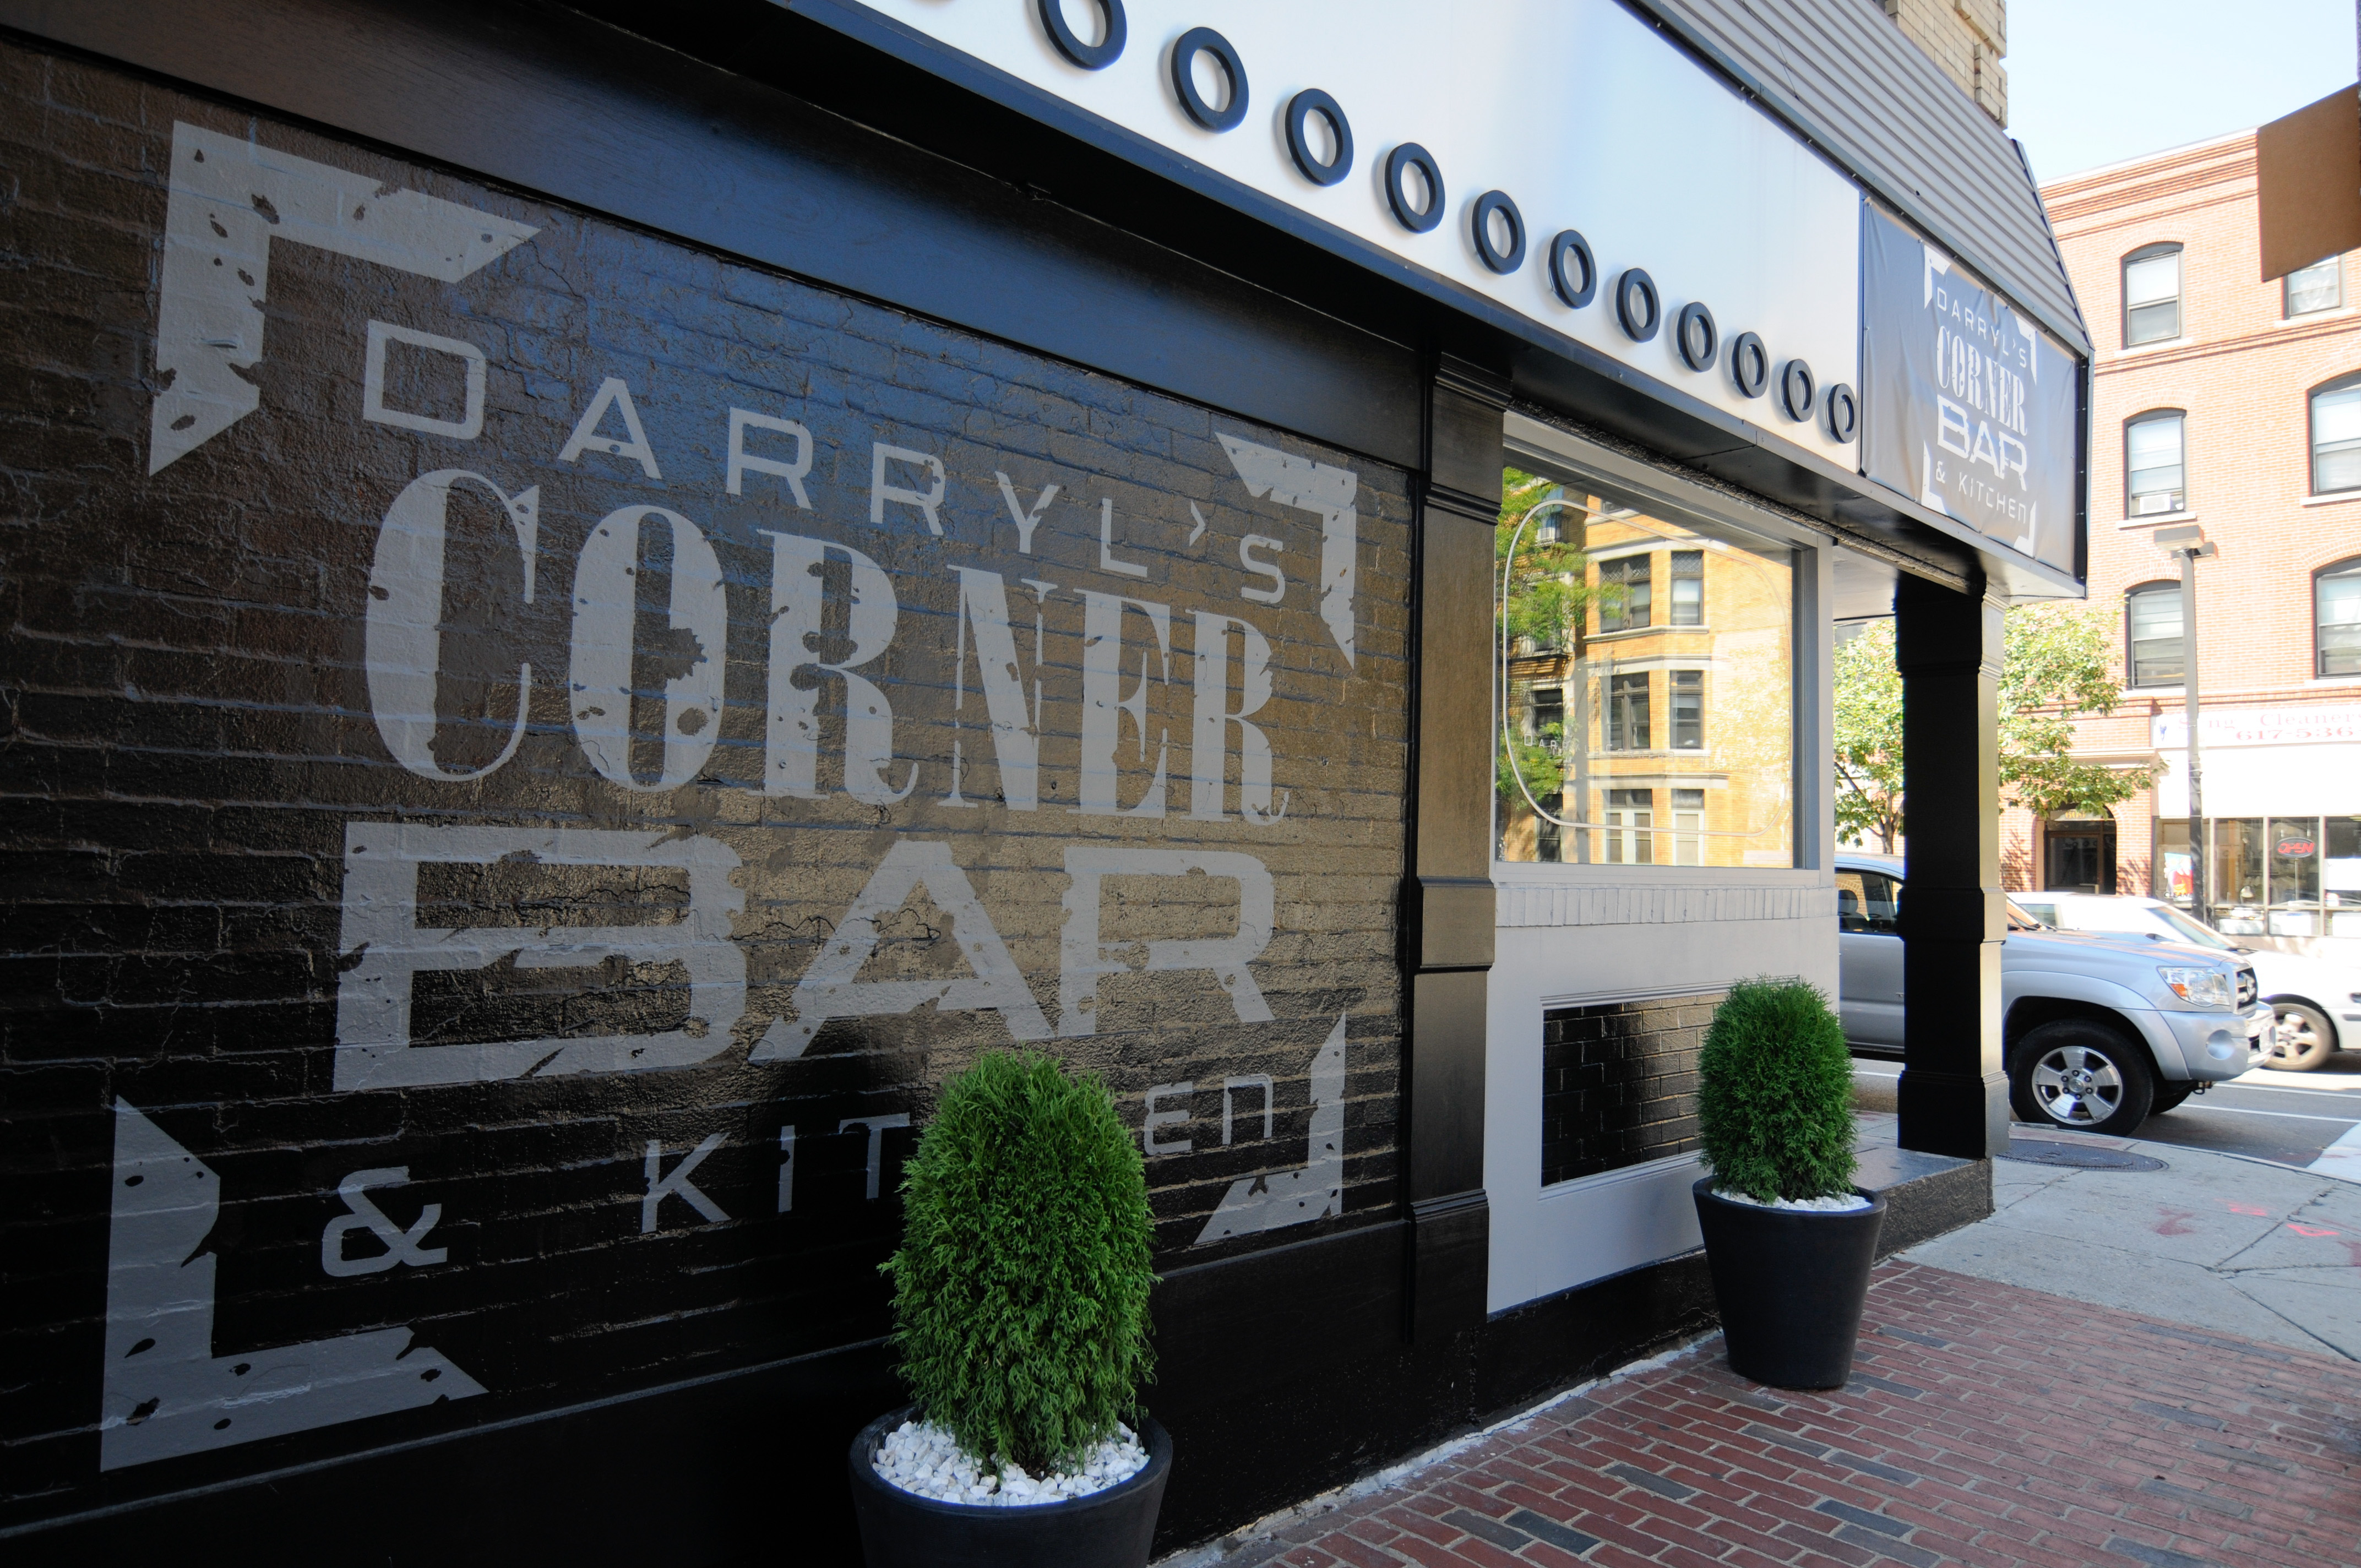 Darryls Corner Bar